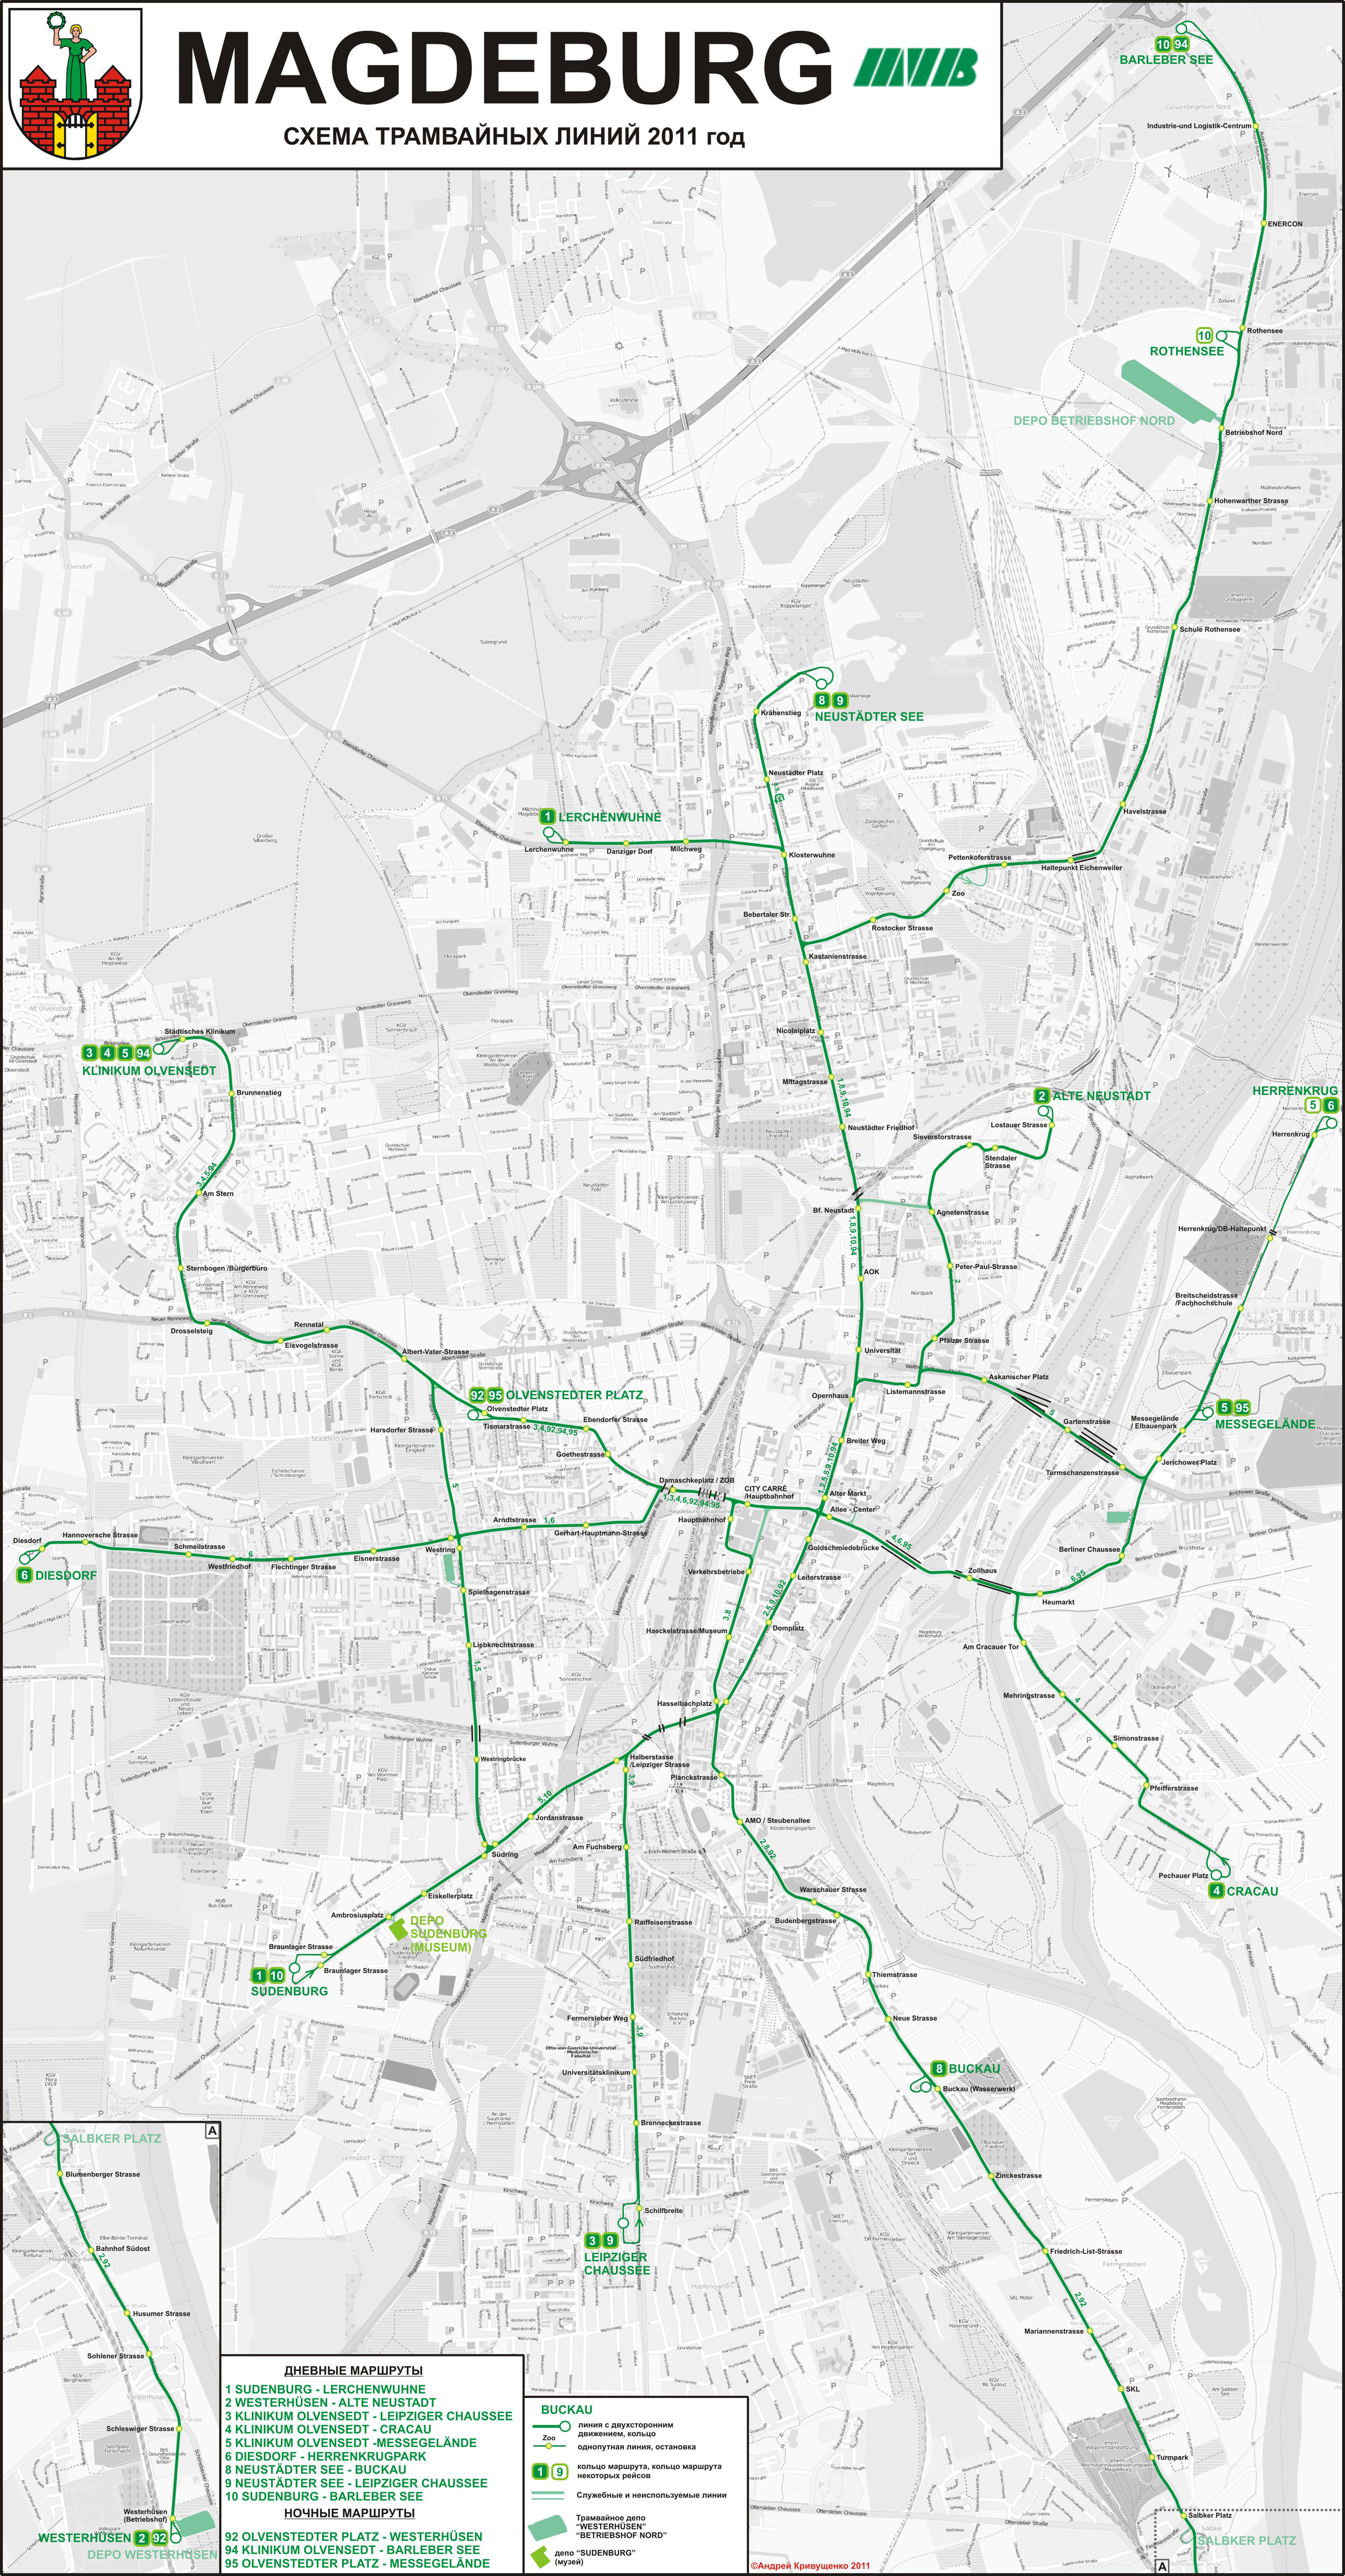 Magdeburg — Maps • Netzpläne